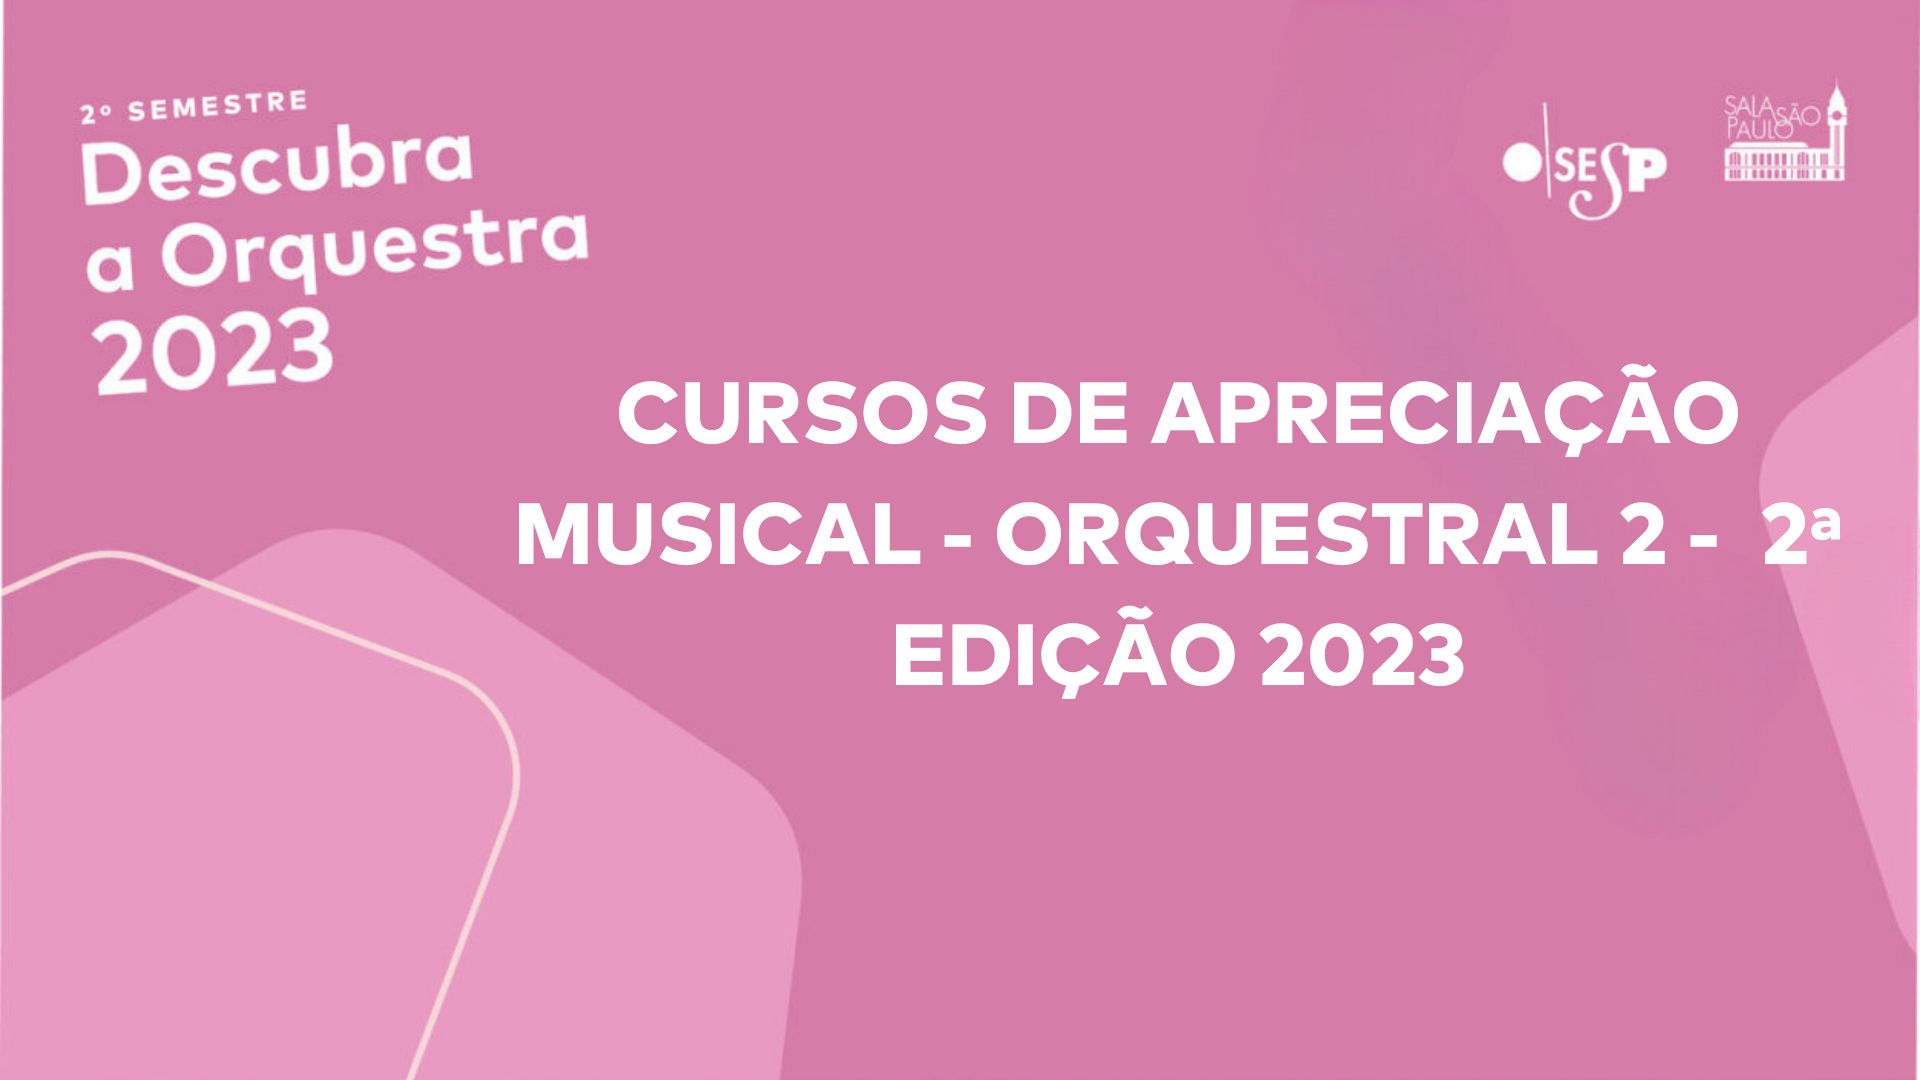 CURSO DE APRECIAÇÃO MUSICAL - ORQUESTRAL 2 - 2ª EDIÇÃO/2023